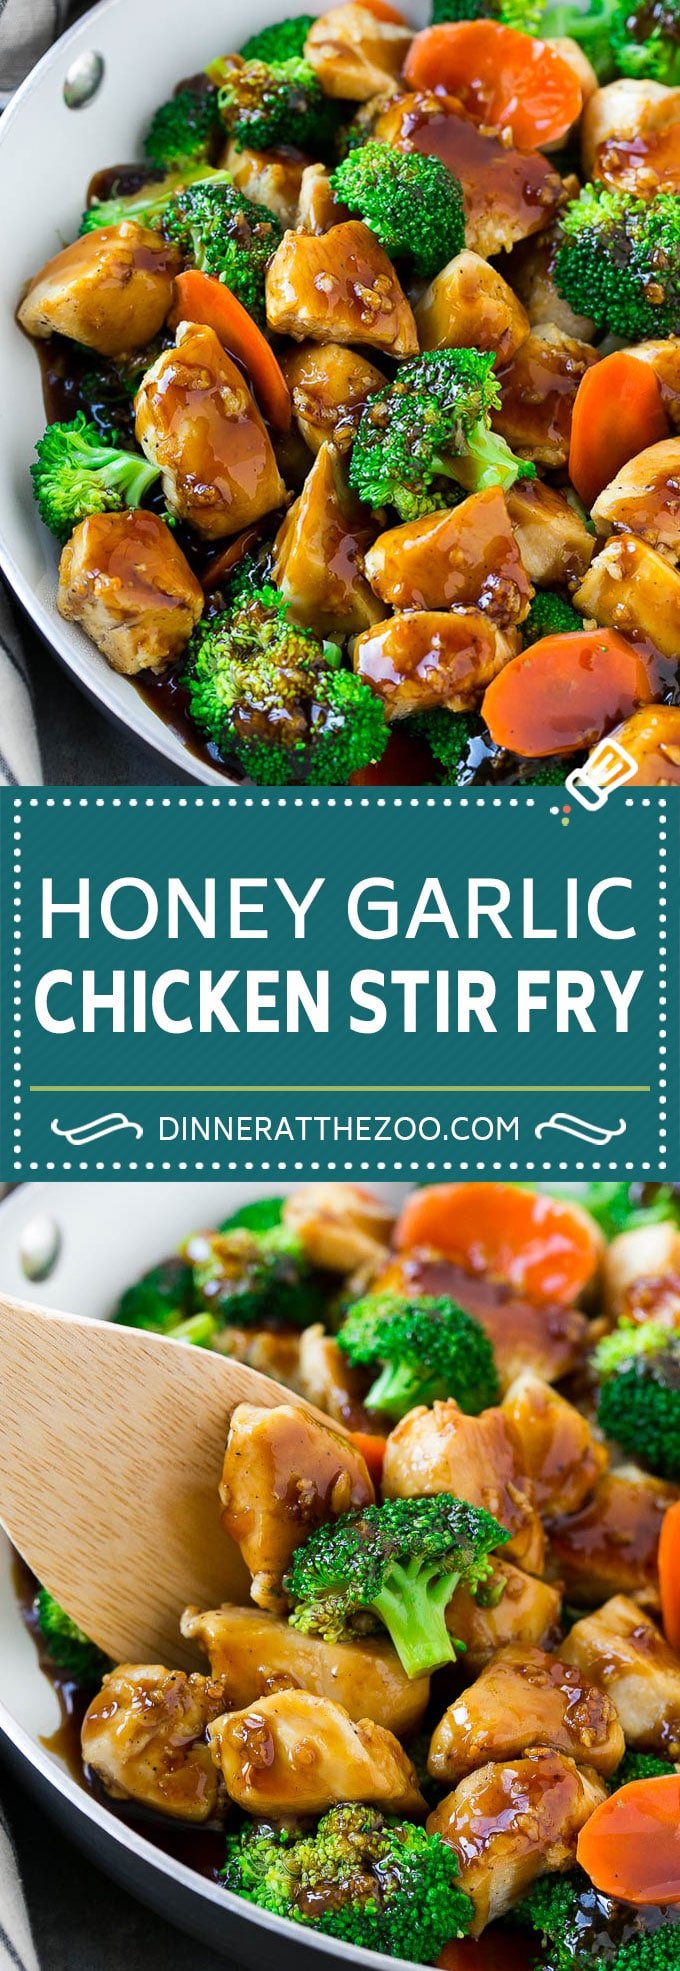 Honey Garlic Chicken Stir Fry | Chicken and Broccoli | Healthy Chicken Recipe | Stir Fry Recipe | Easy Chicken Recipe #chickenrecipe #stirfry #asianfood #healthy #dinneratthezoo